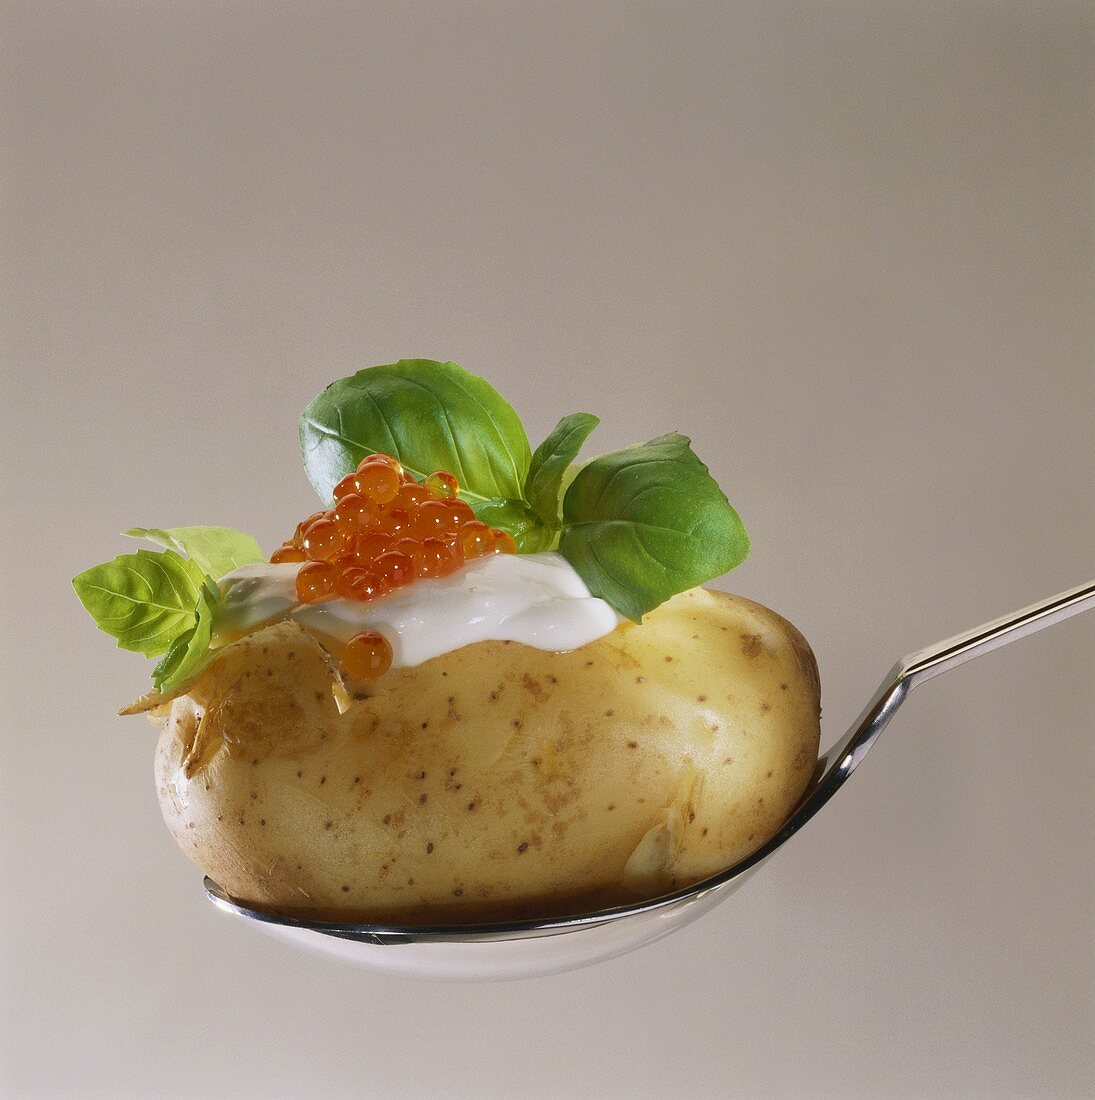 Potato with sour cream, caviar and basil